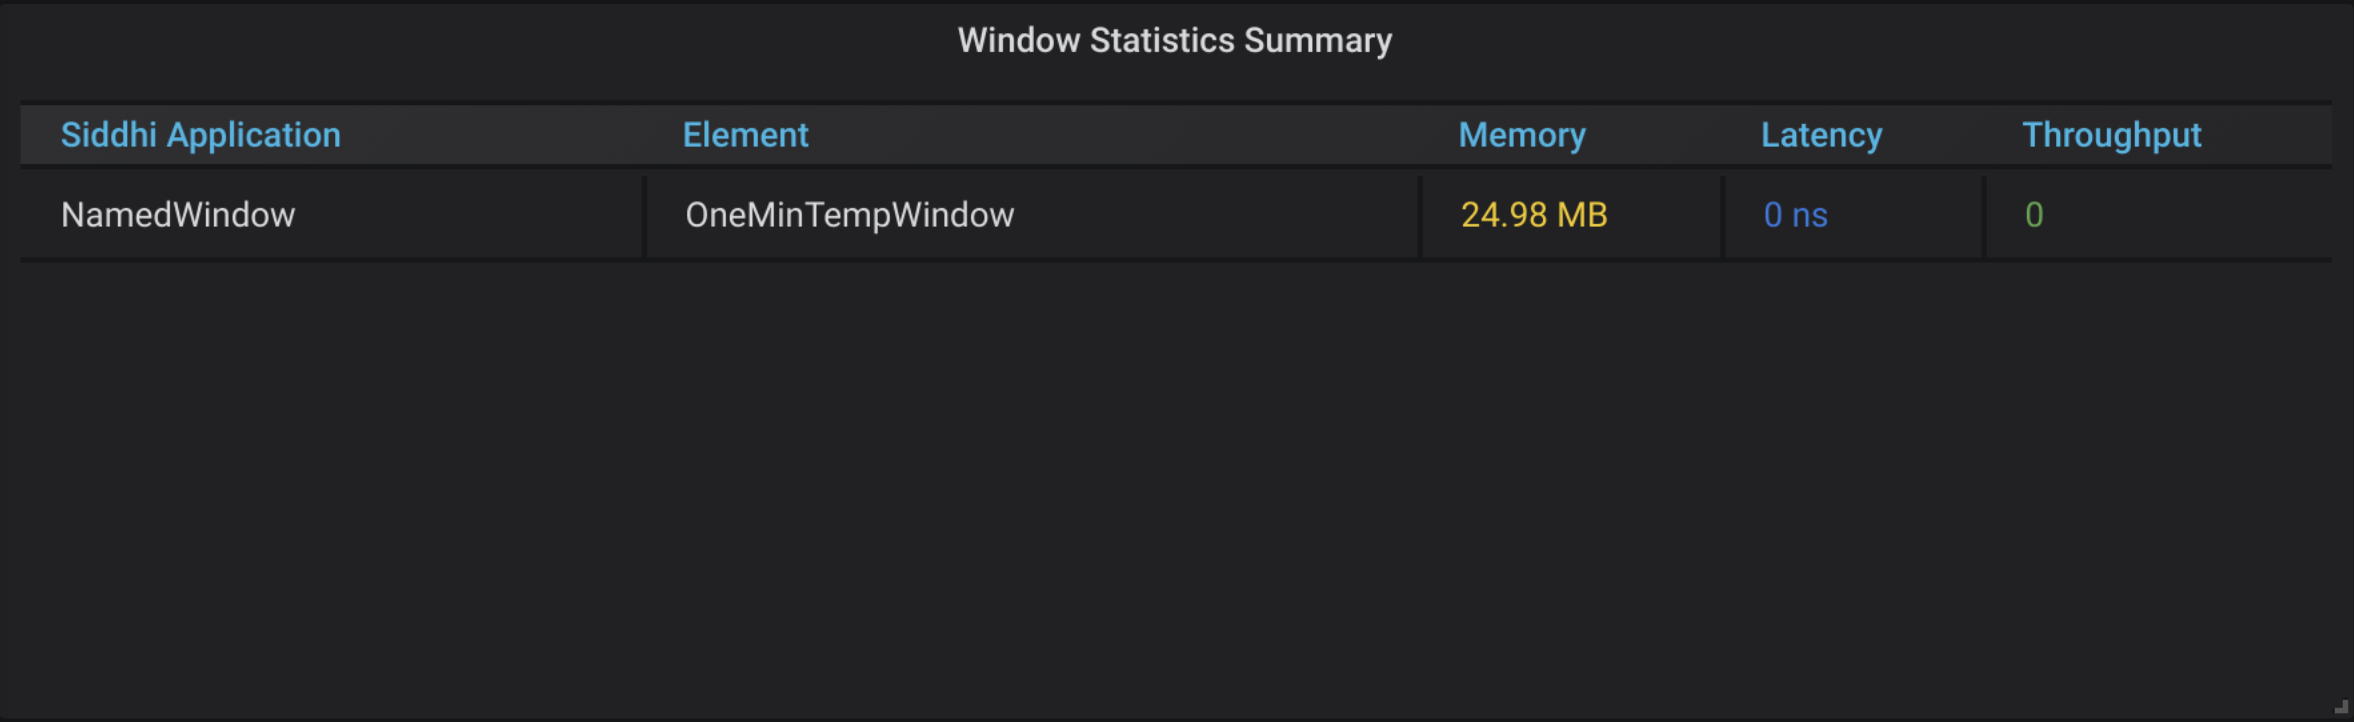 Window Statistics Summary Table